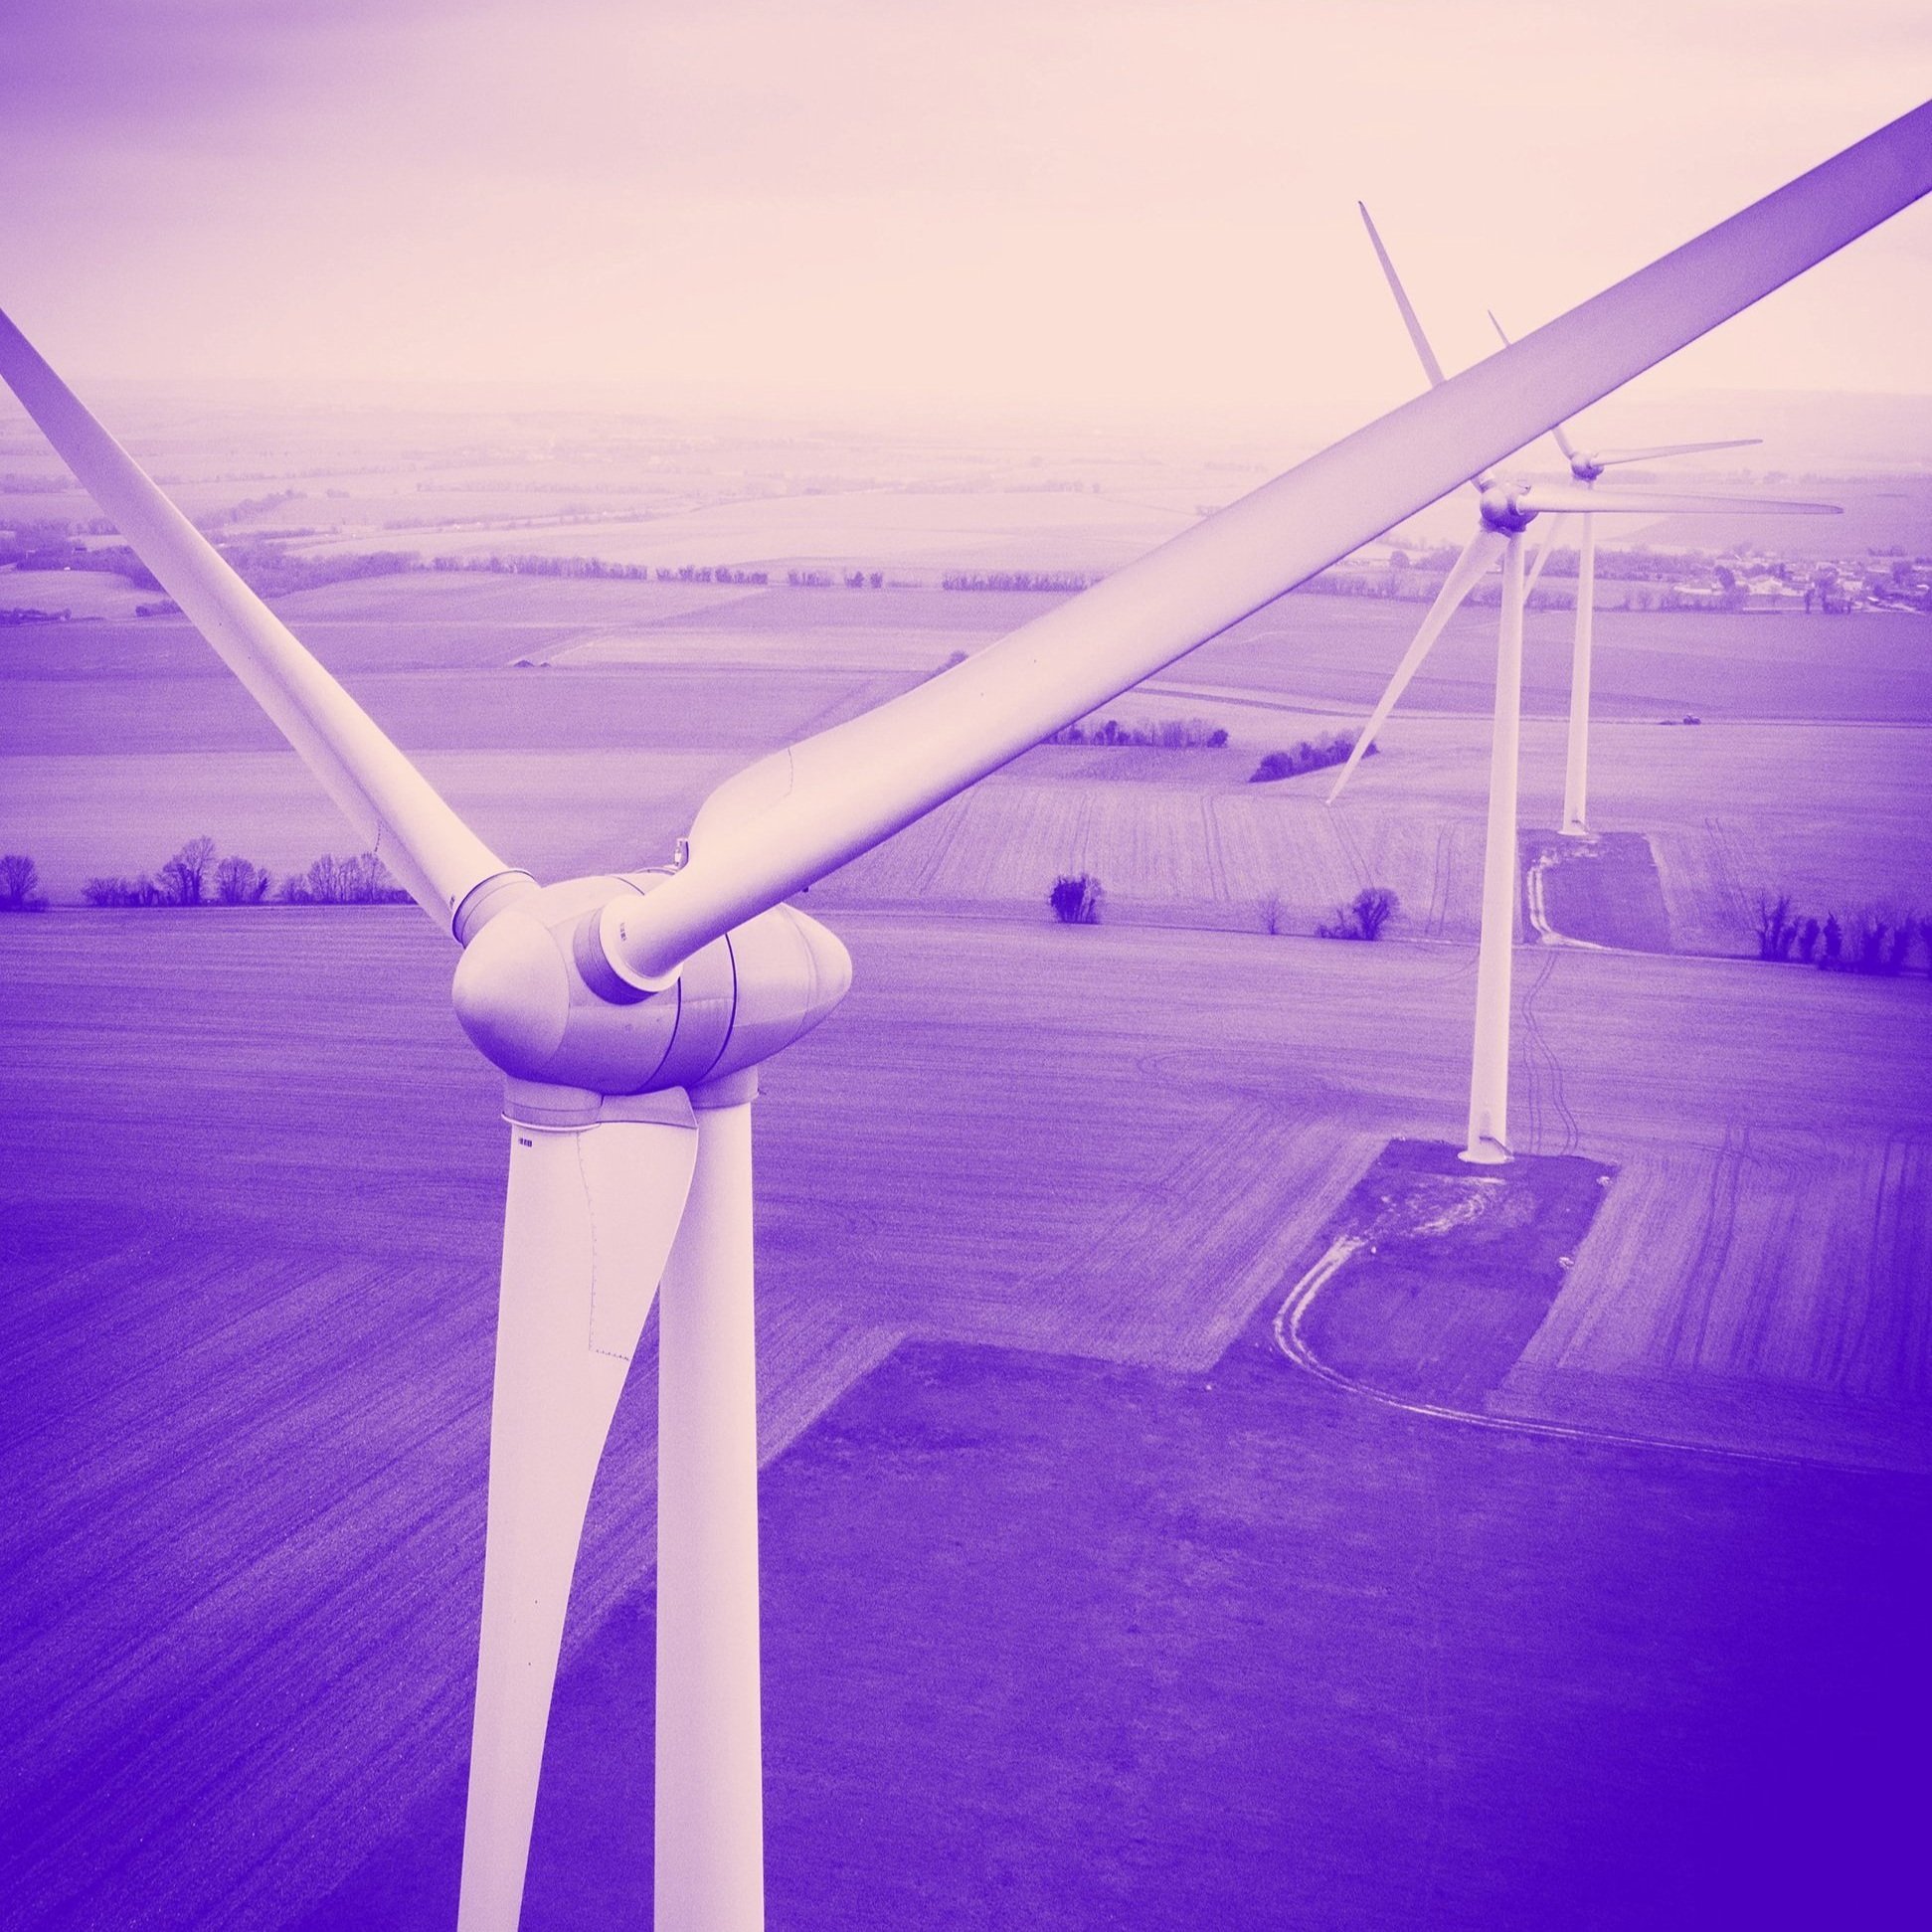 Image of large windmills across farmland